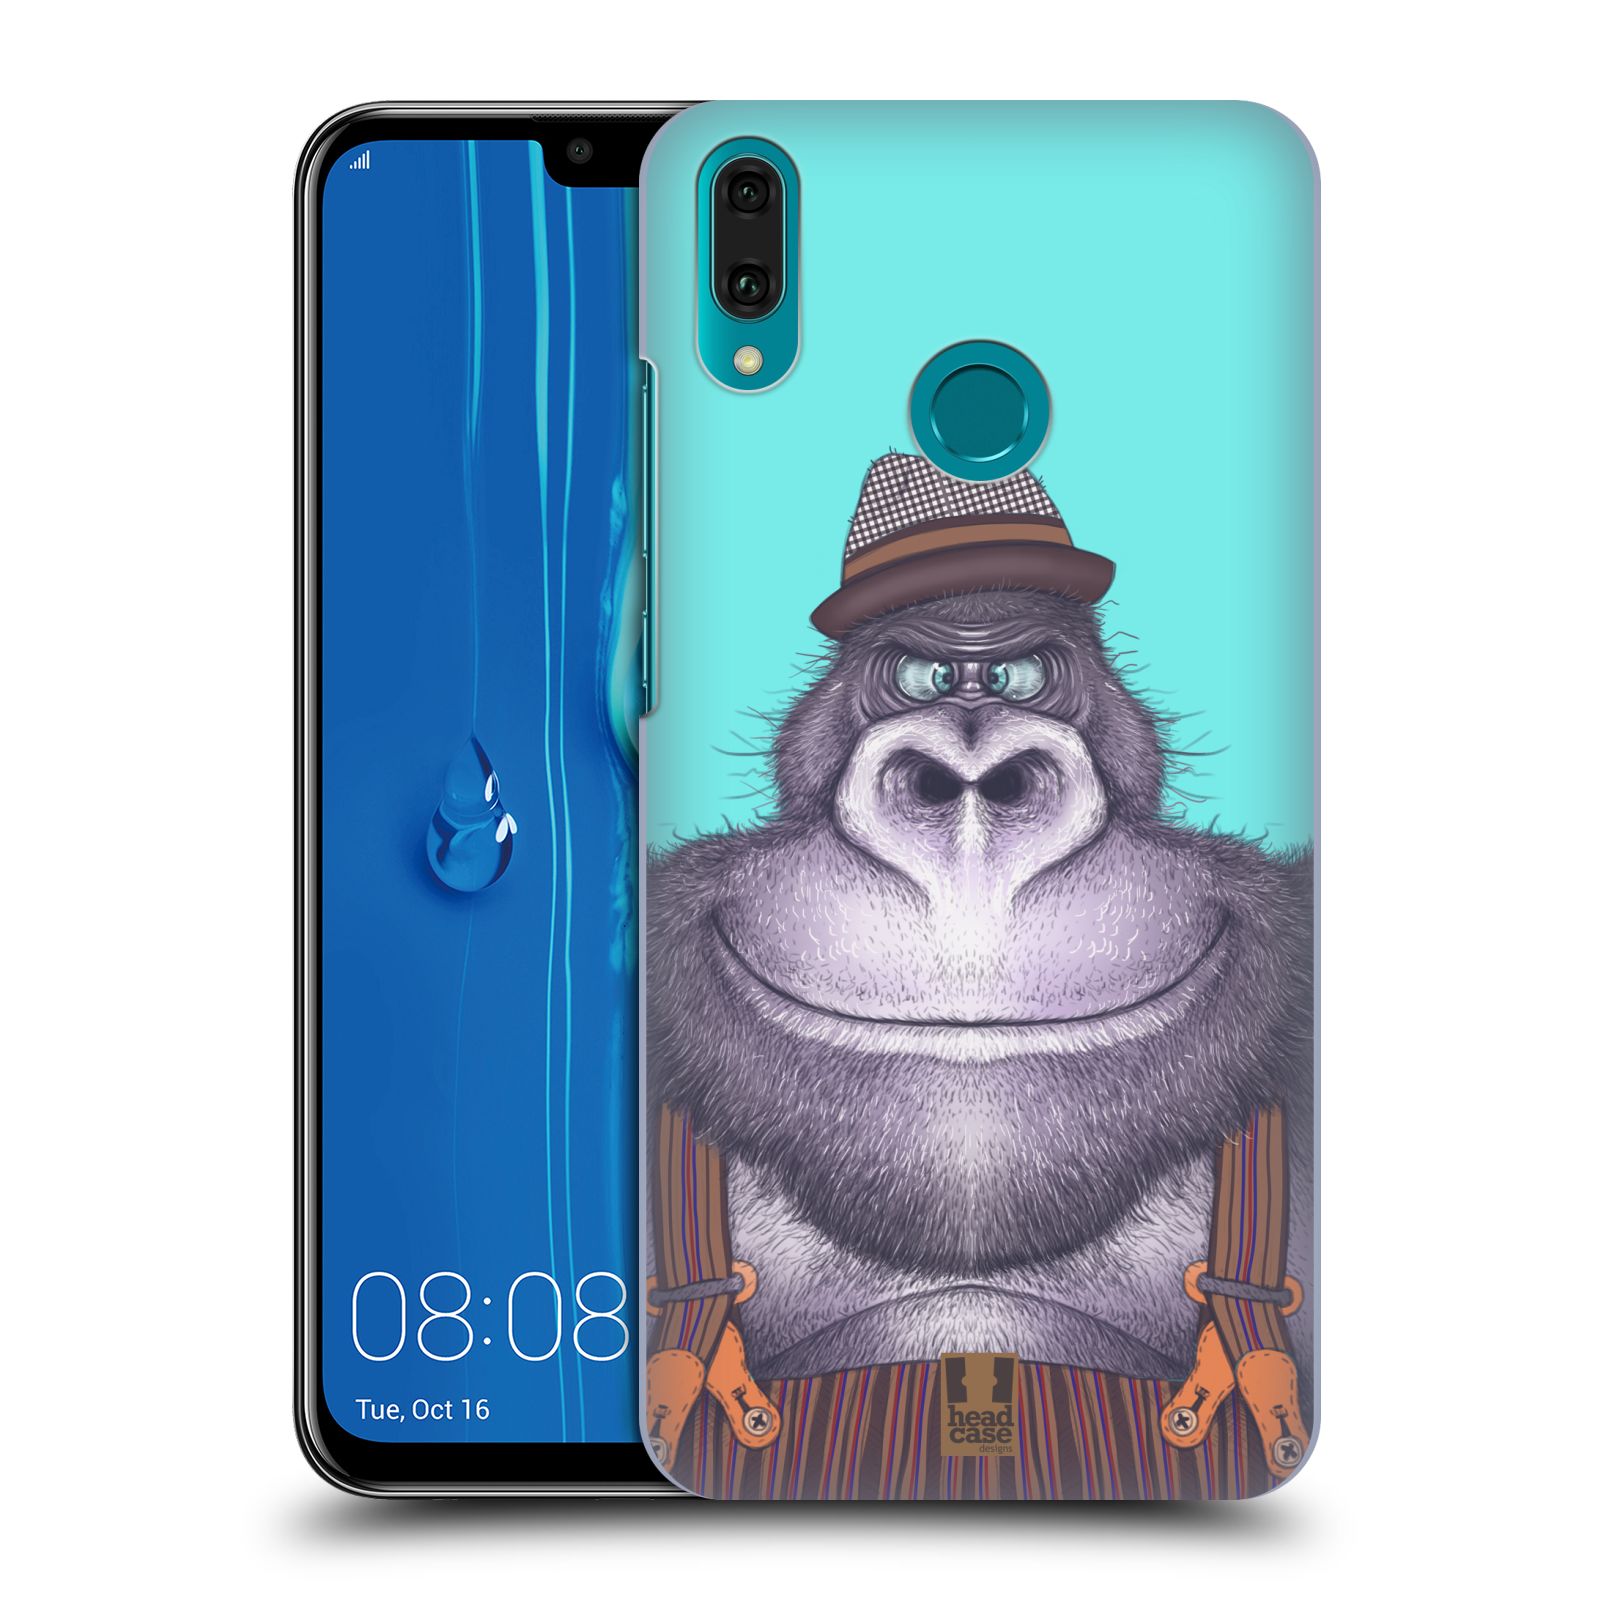 Pouzdro na mobil Huawei Y9 2019 - HEAD CASE - vzor Kreslená zvířátka gorila